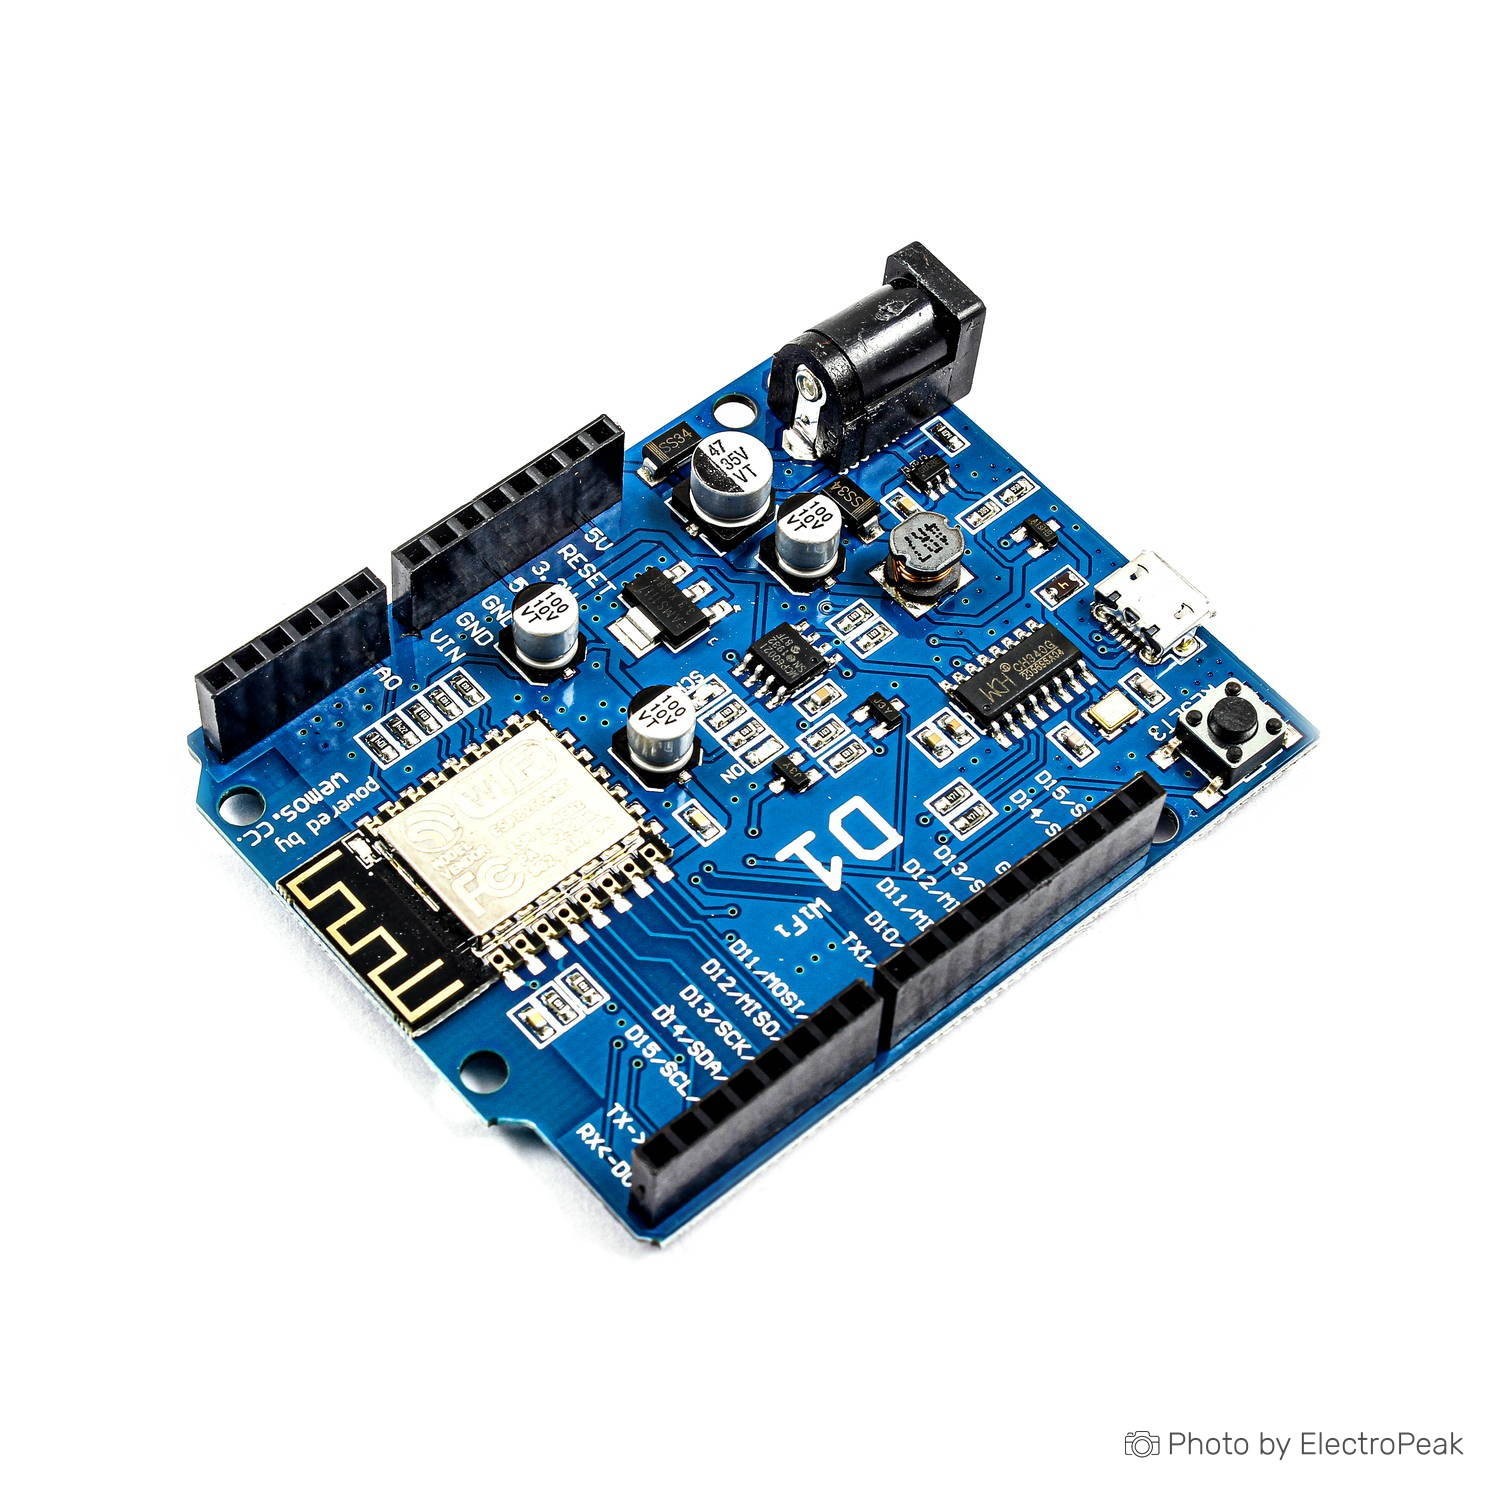 Configuring the Wemos D1 Mini Pro ESP8266 for Arduino IDE – The